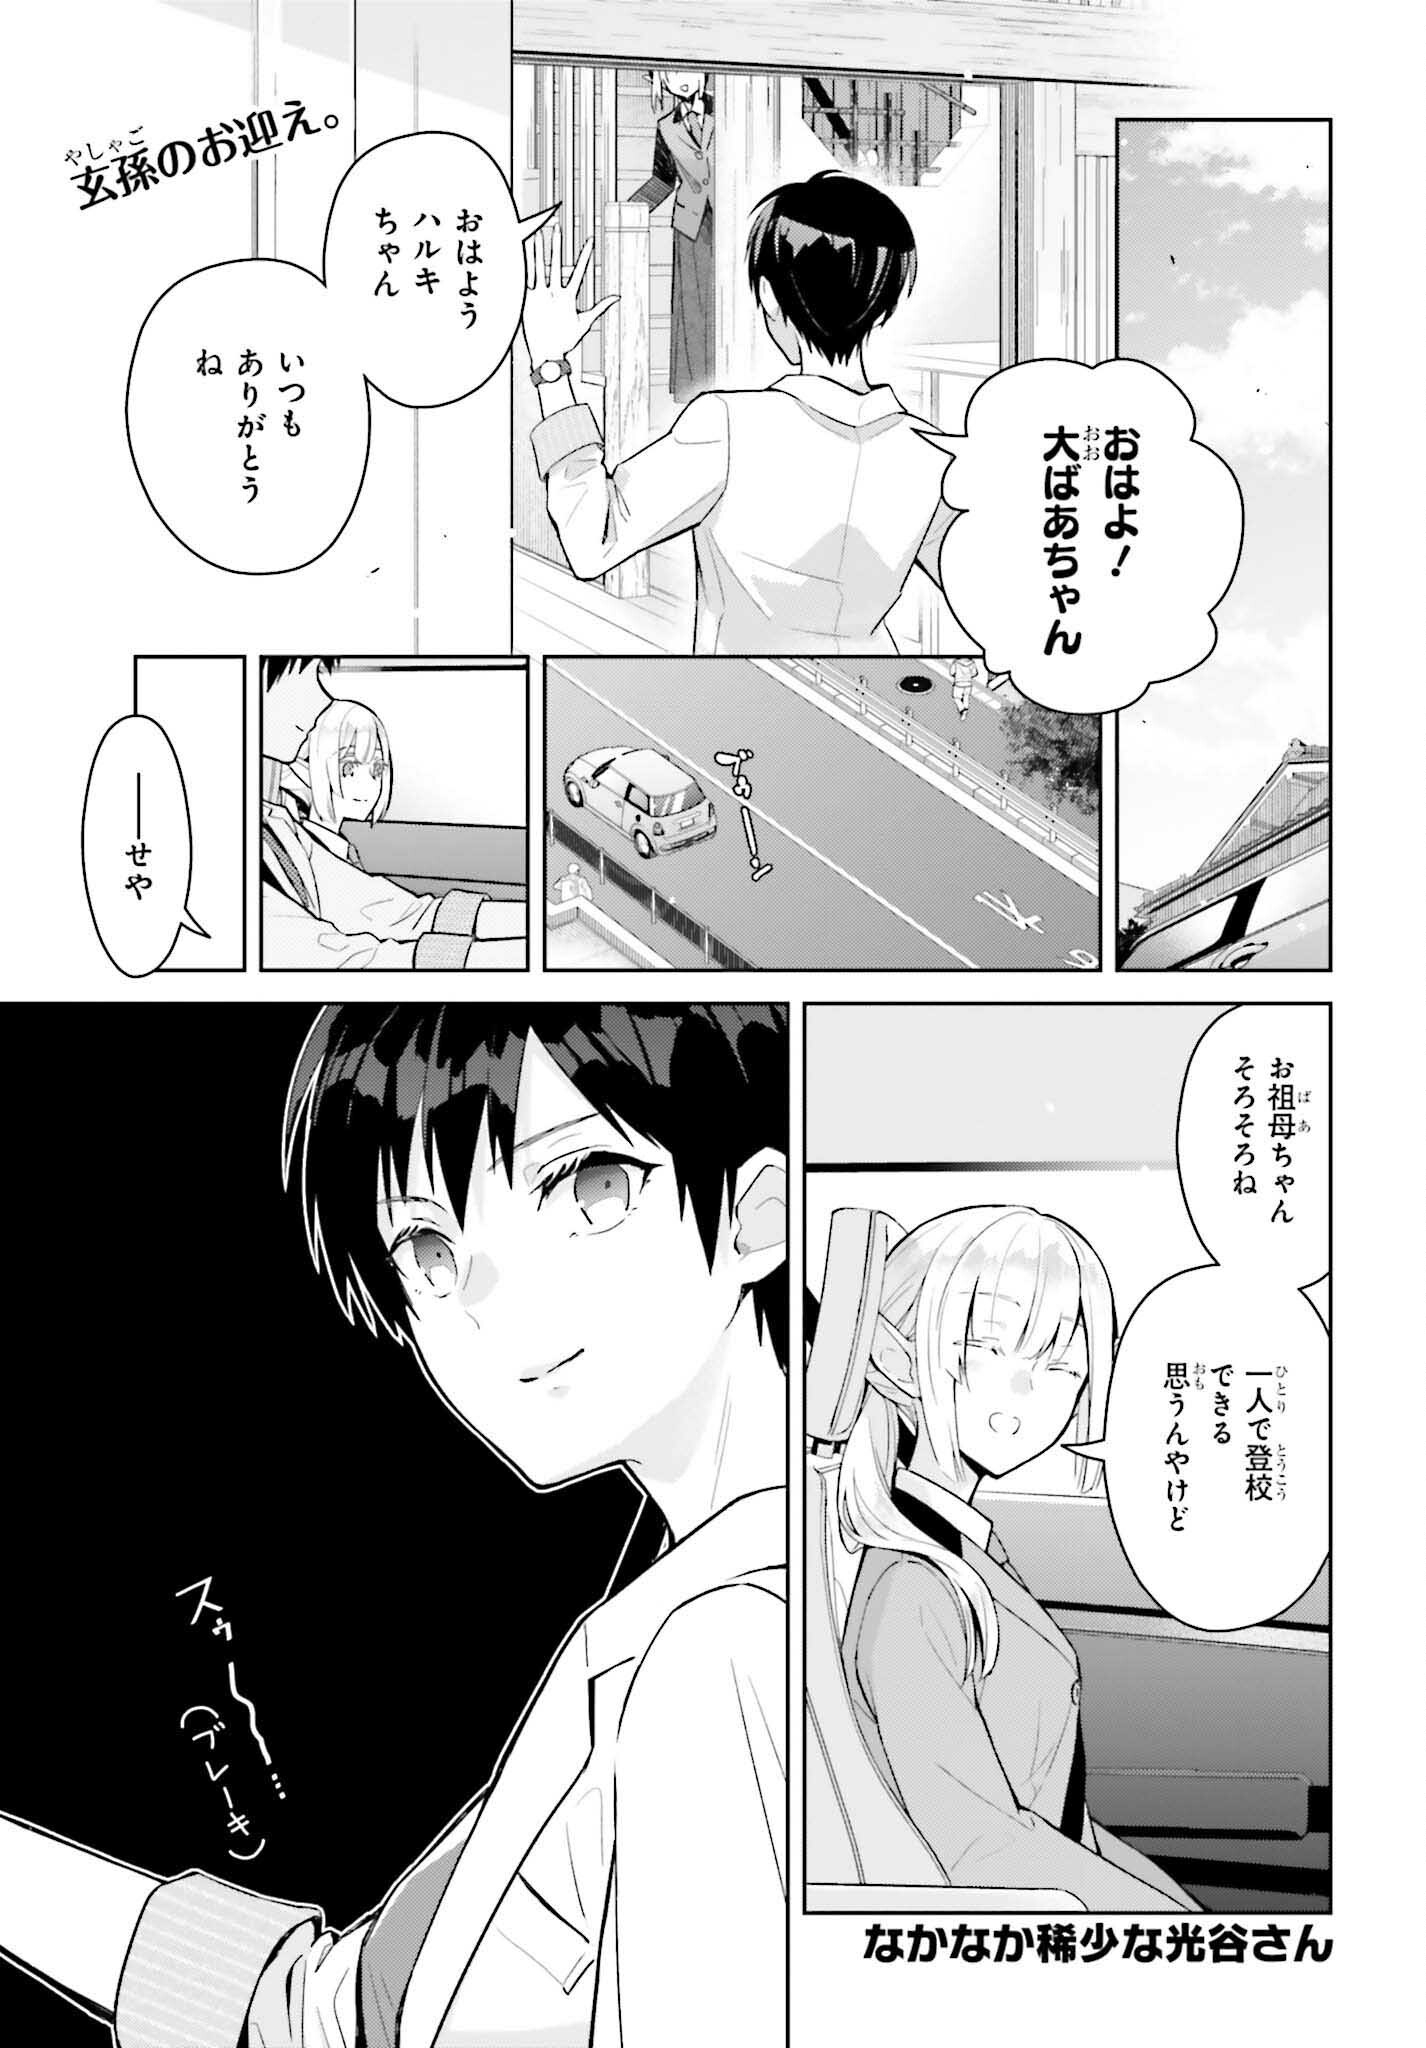 Nakanaka Kishou na Mitsuya-san - Chapter 2 - Page 1